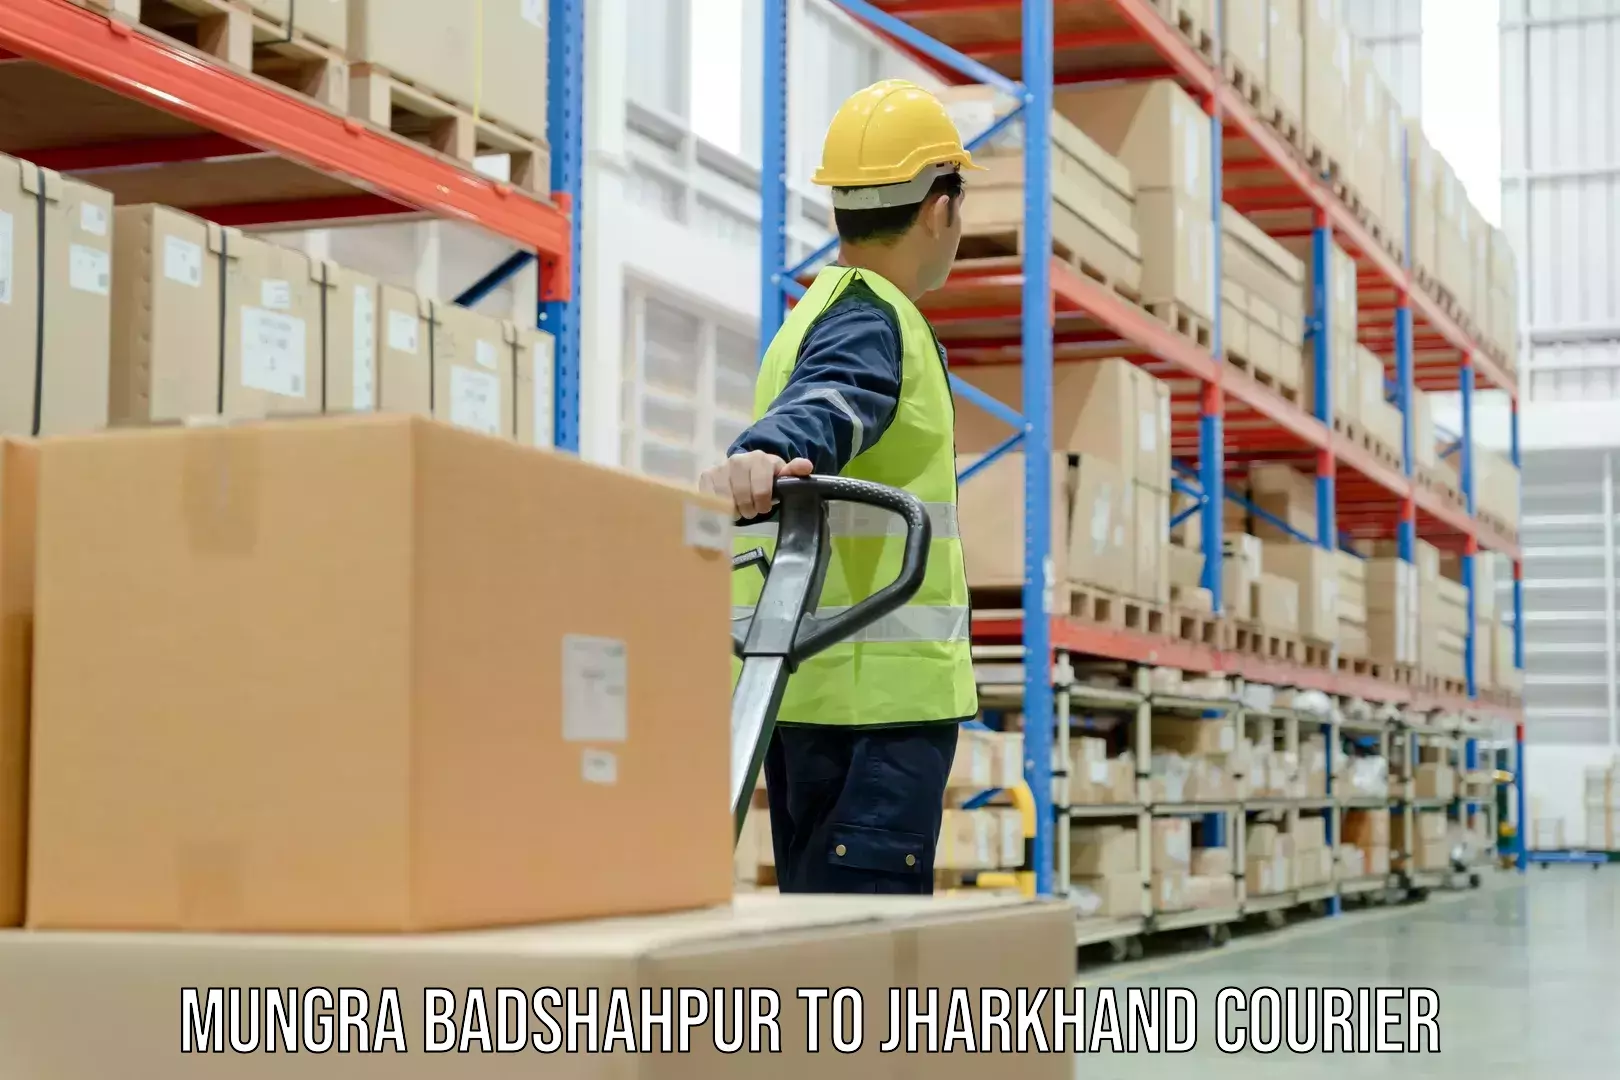 Advanced shipping network Mungra Badshahpur to Dhanbad